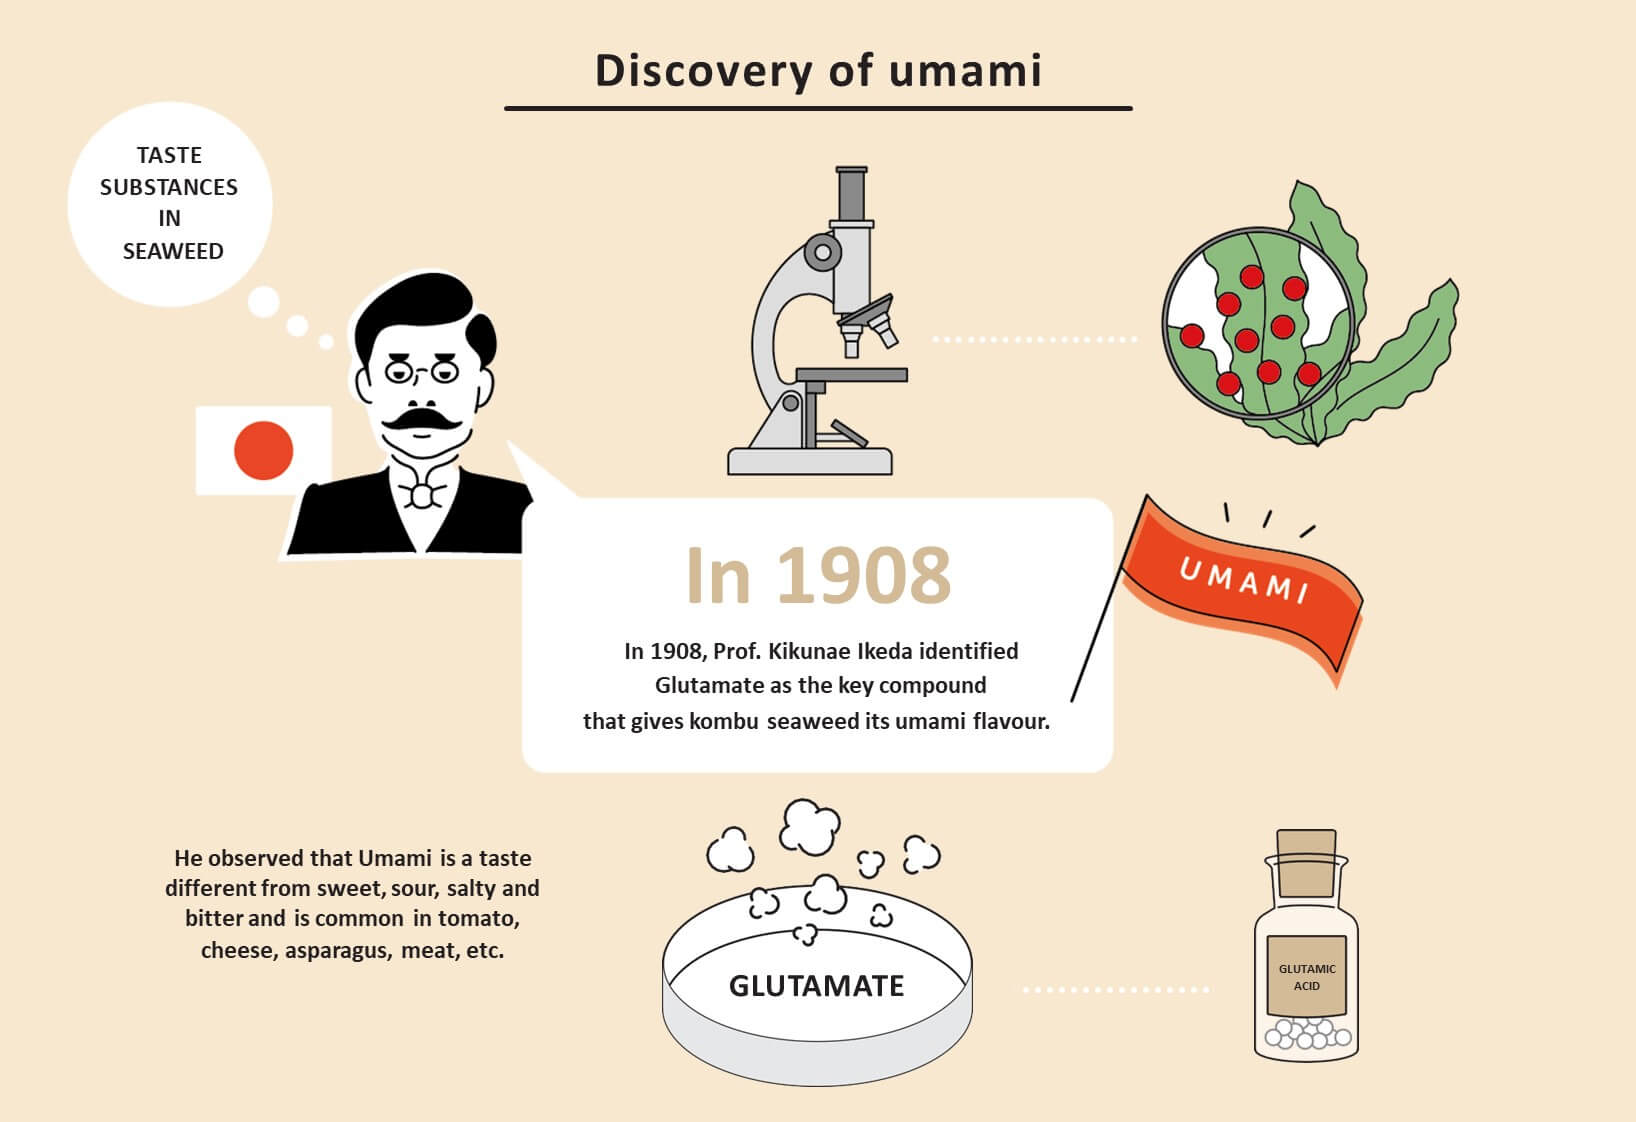 Năm 1908, Giáo sư Kikunae Ikeda đã xác định glutamate là hợp chất quan trọng tạo nên hương vị umami của rong biển kombu.